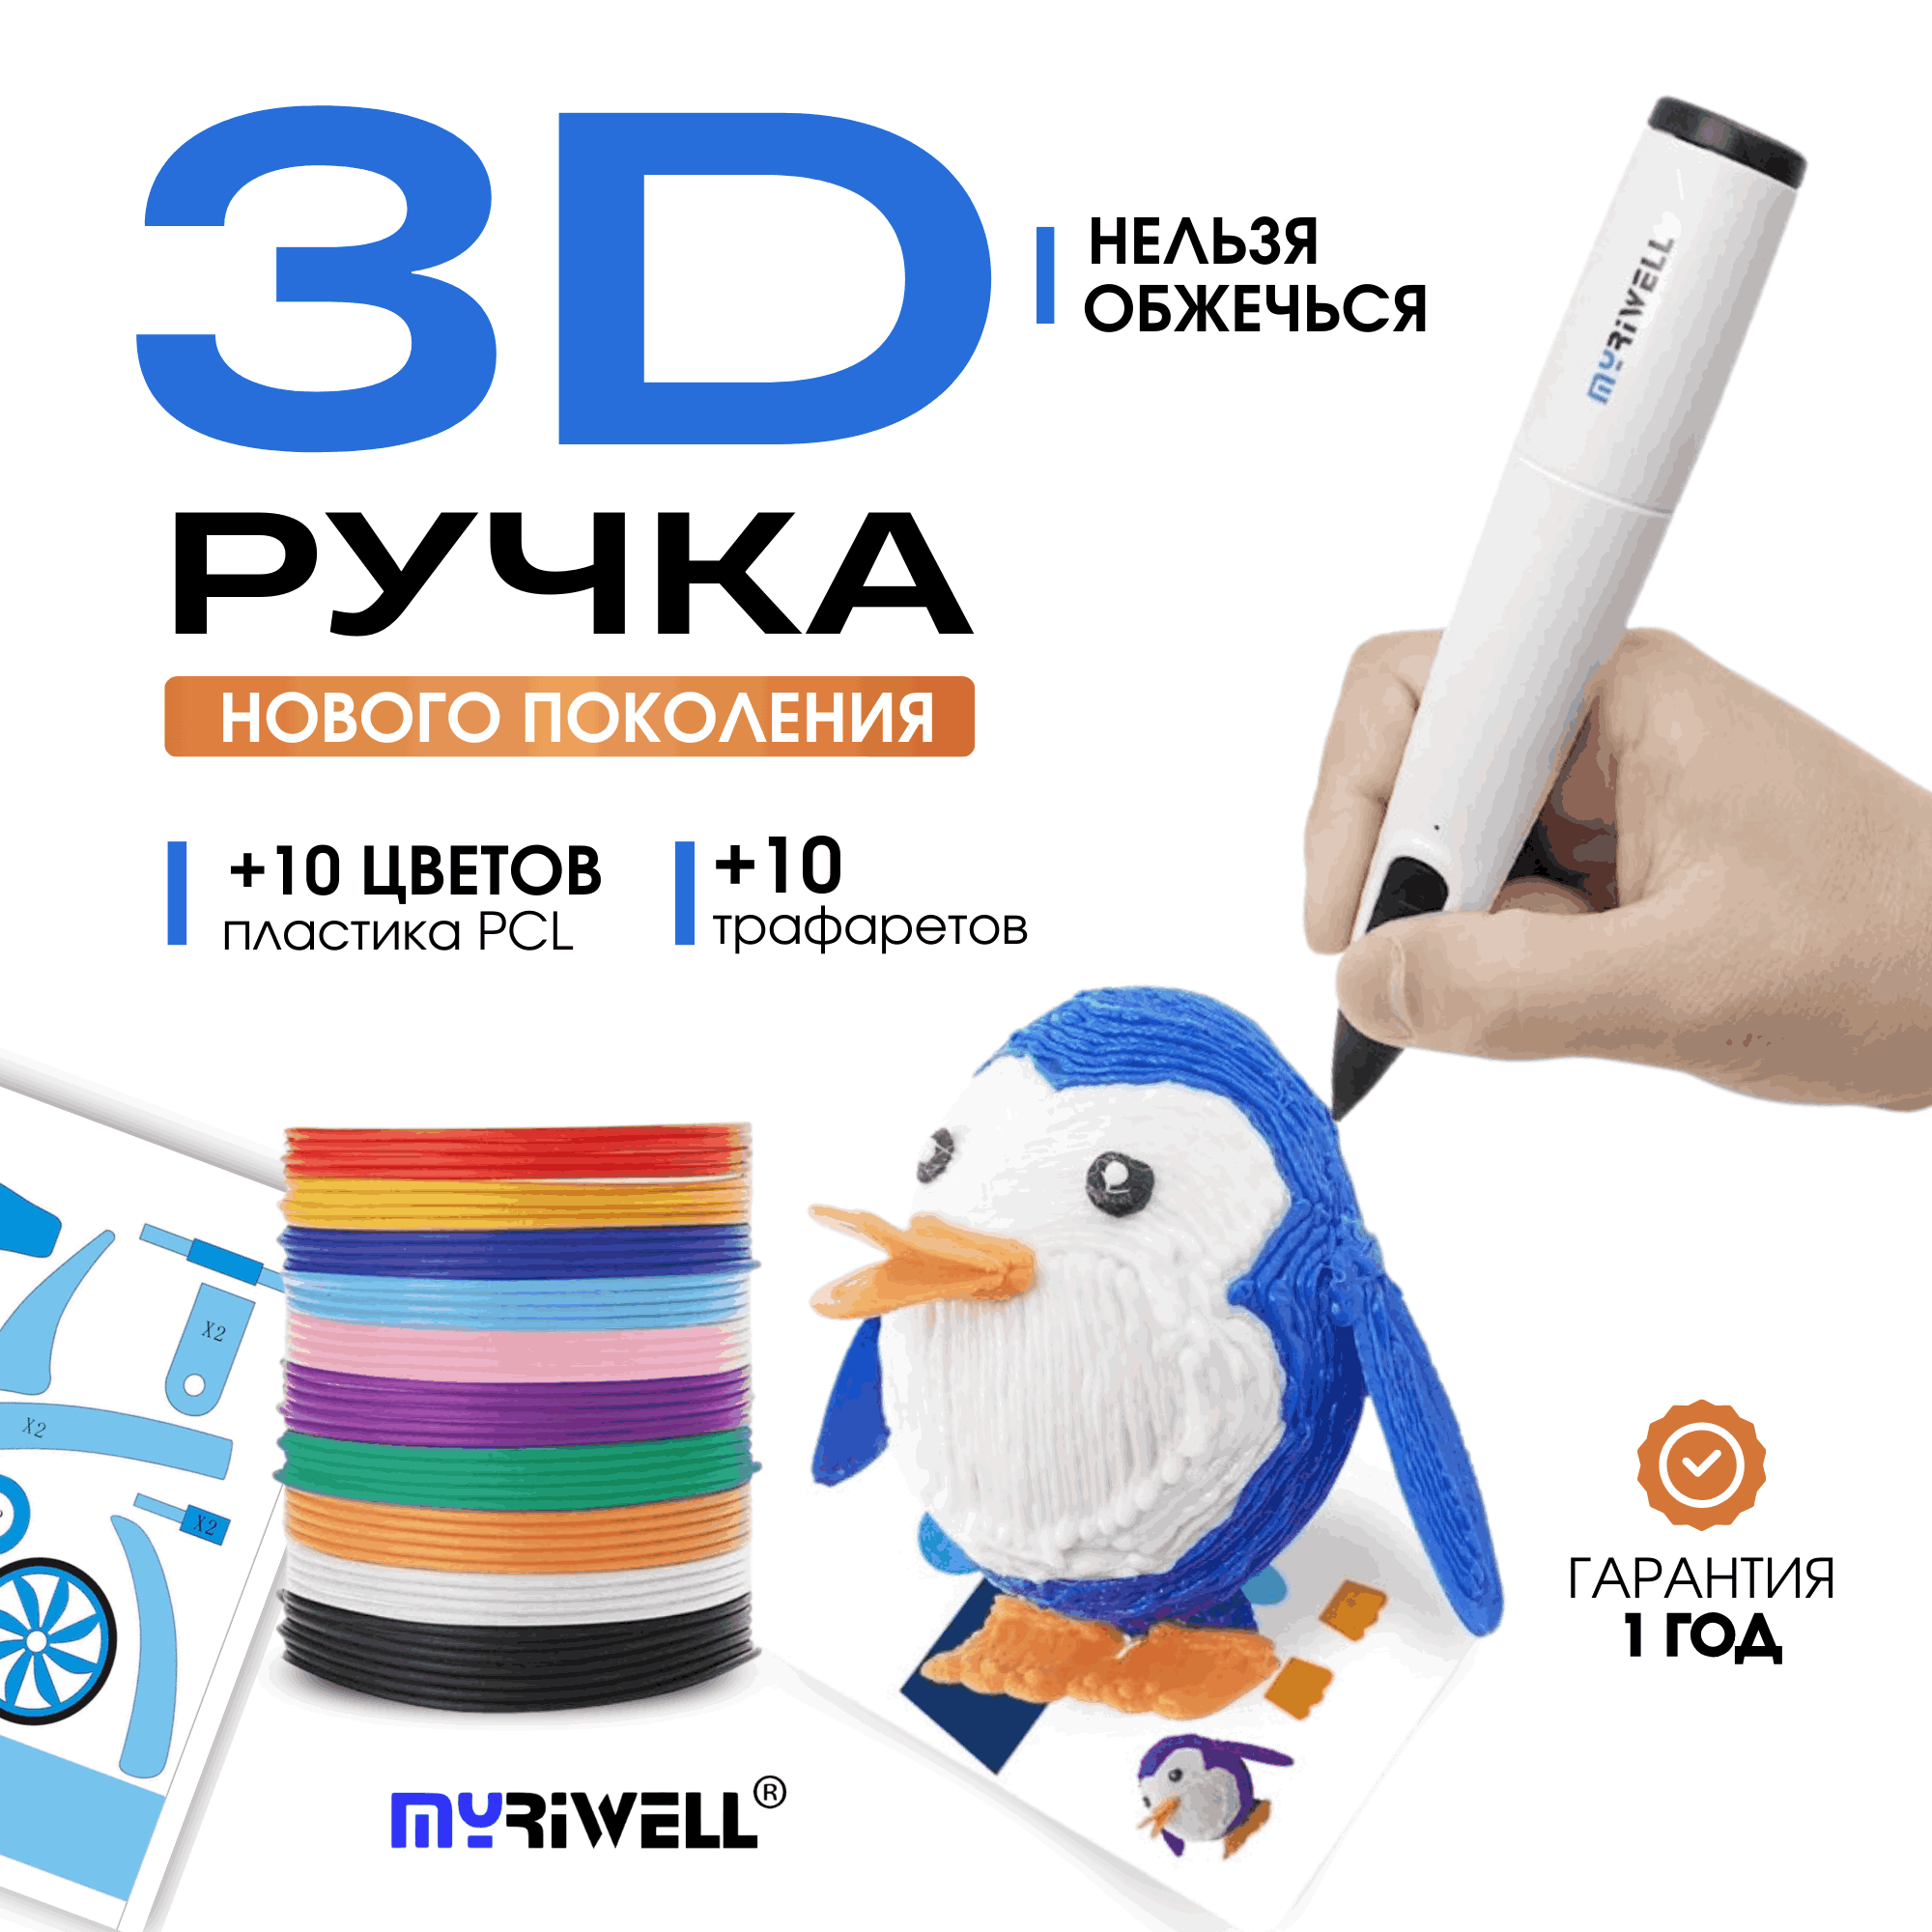 3D ручка Myriwell RP300B + 10 цветов пластика PCL и 10 трафаретов Голубой